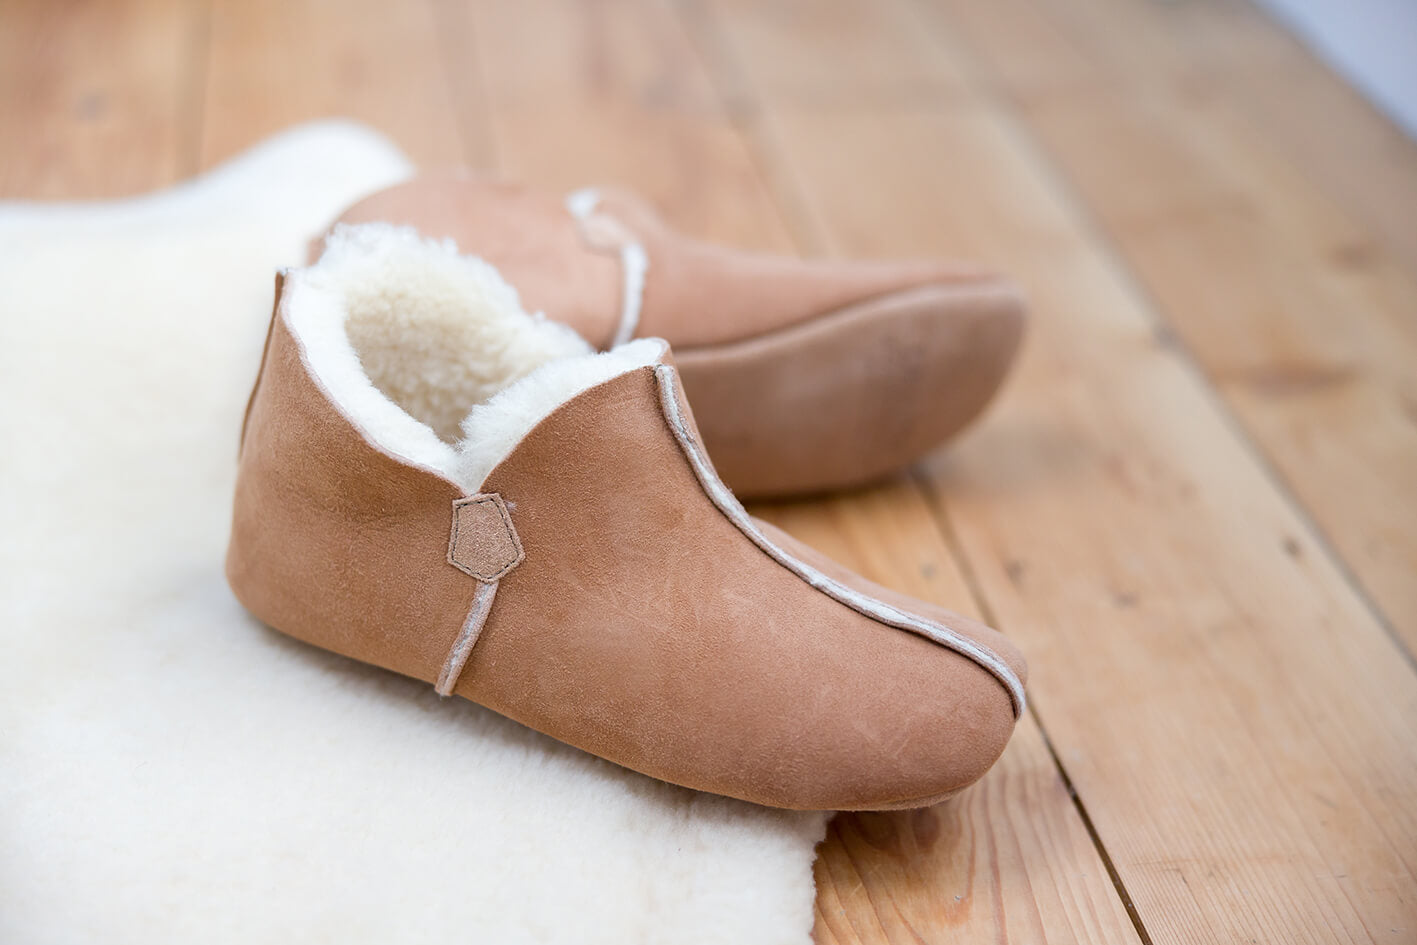 sheepskin bootie slippers